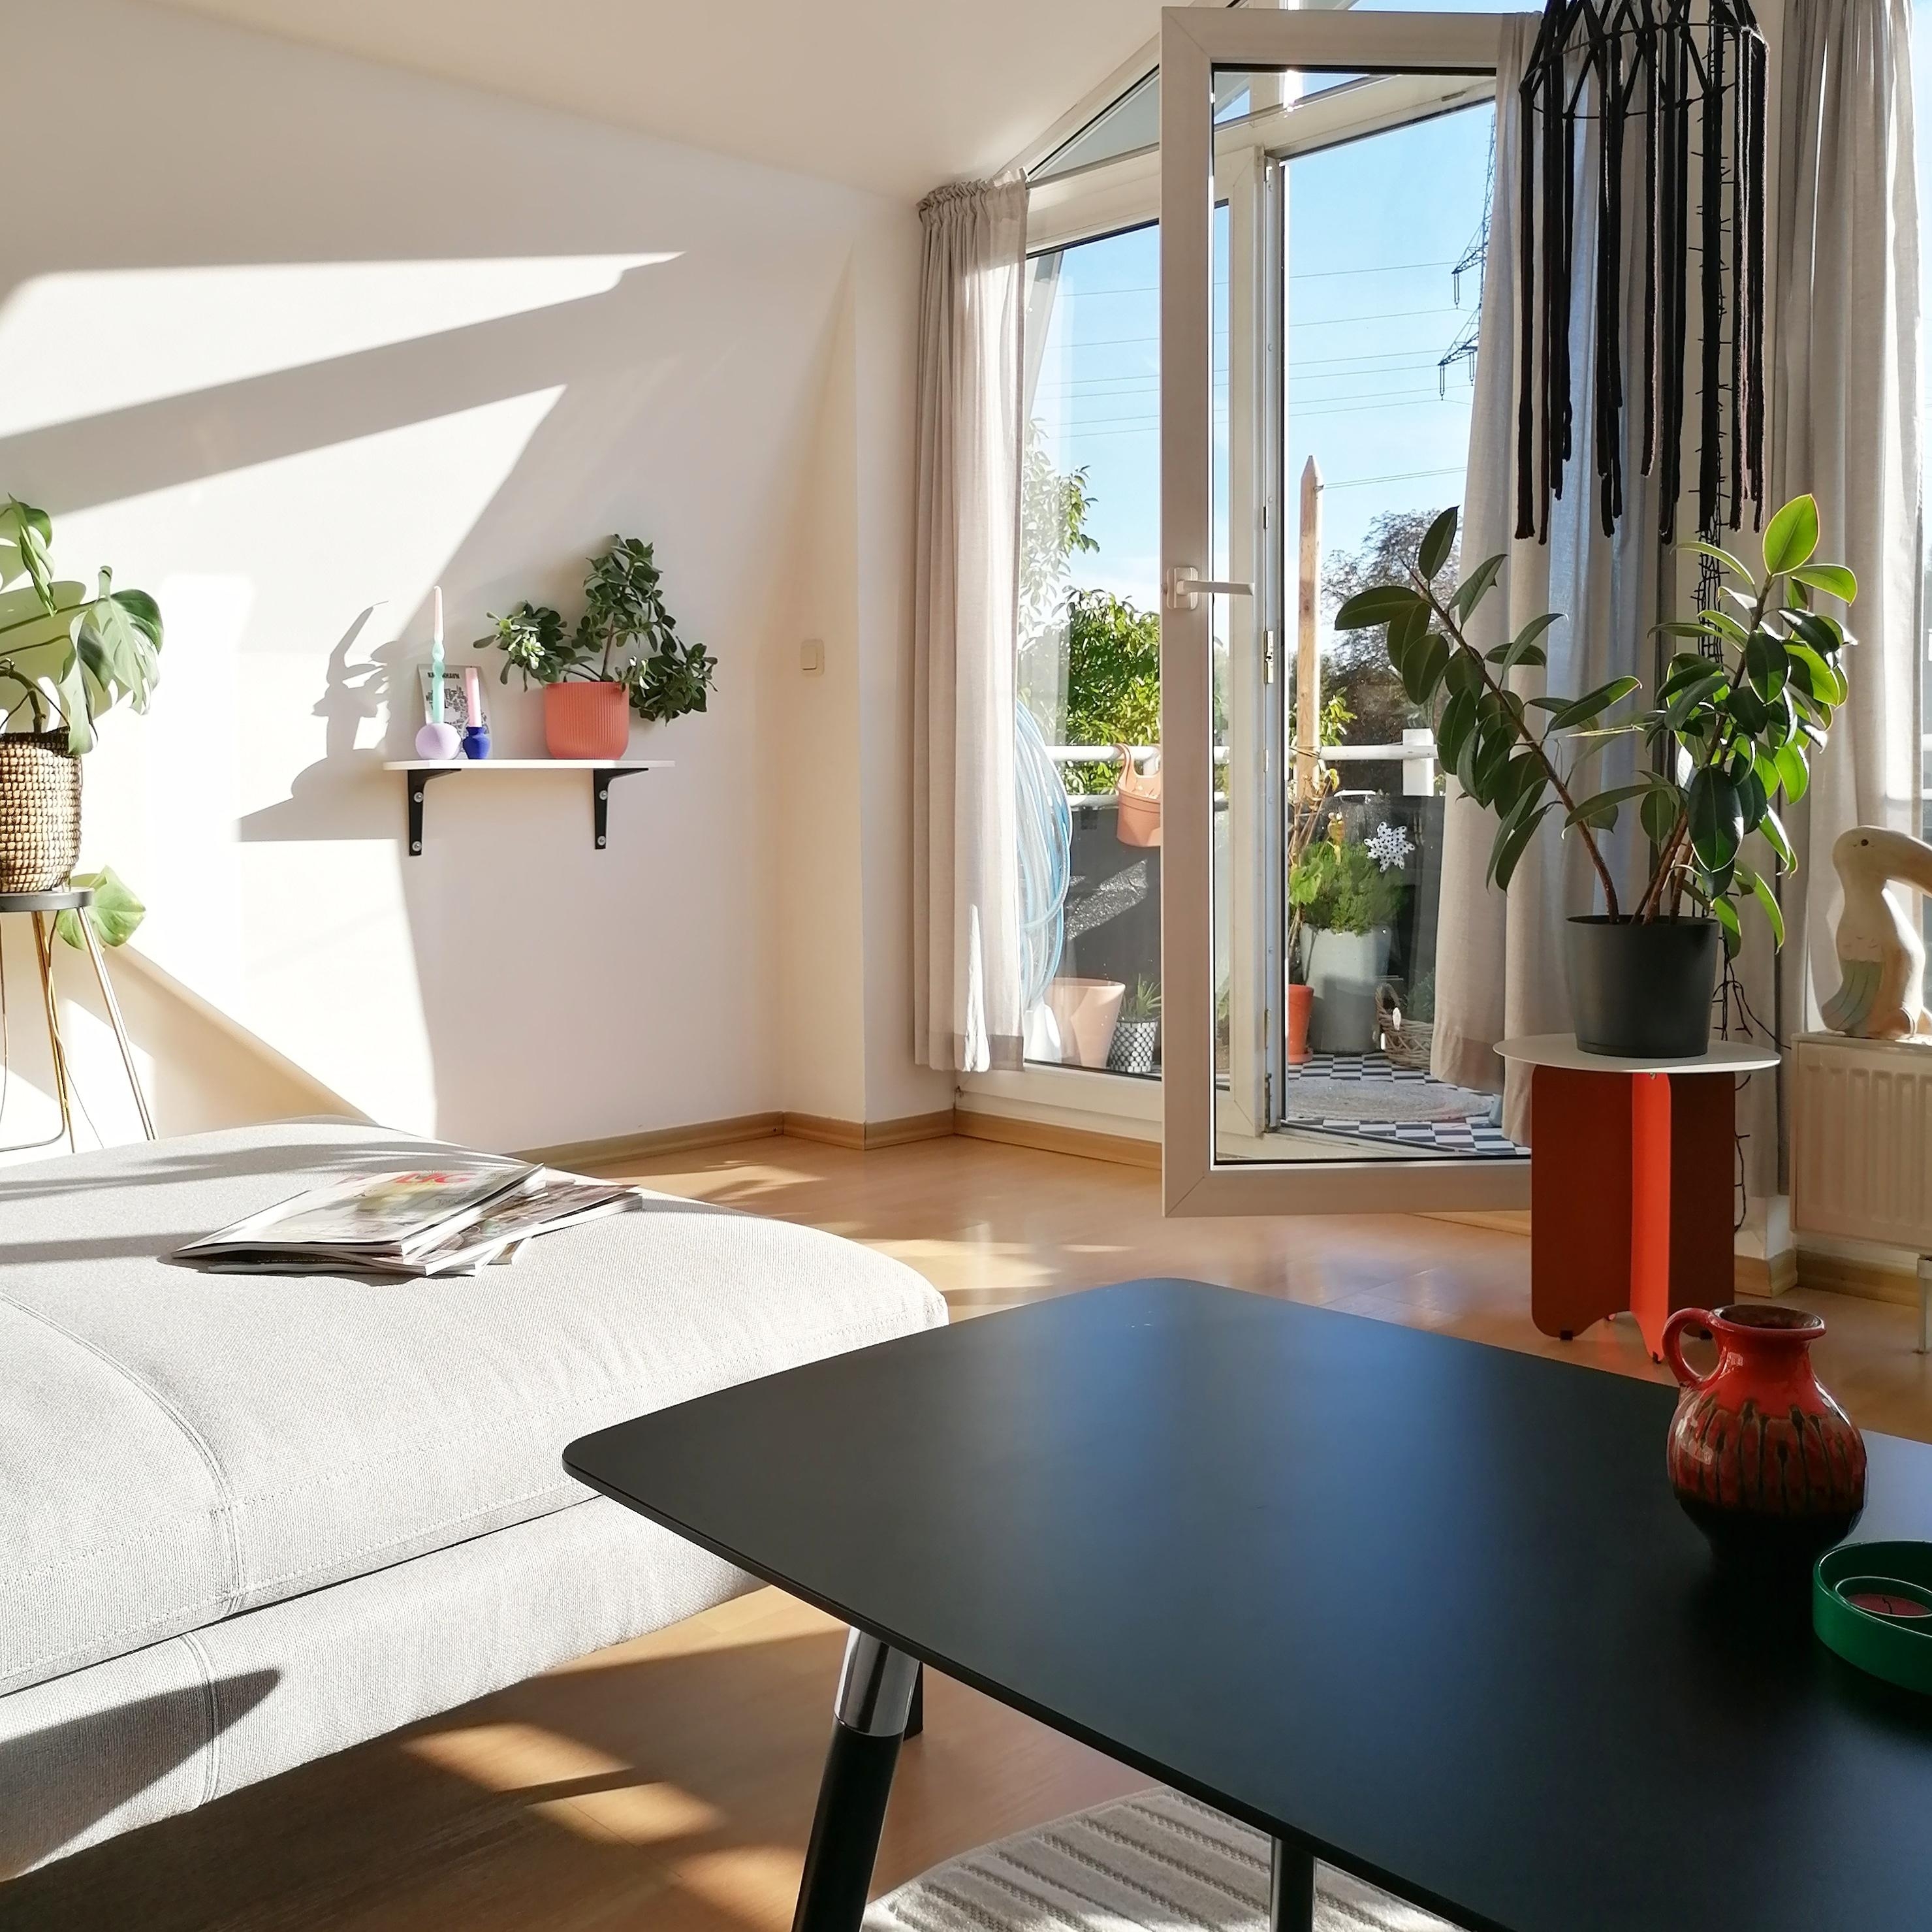 Unser Wohnzimmer 🧡 #livingchallenge #livingroom #wohnzimmer #couchstyle #sofa #skandinavischwohnen #interiorlove